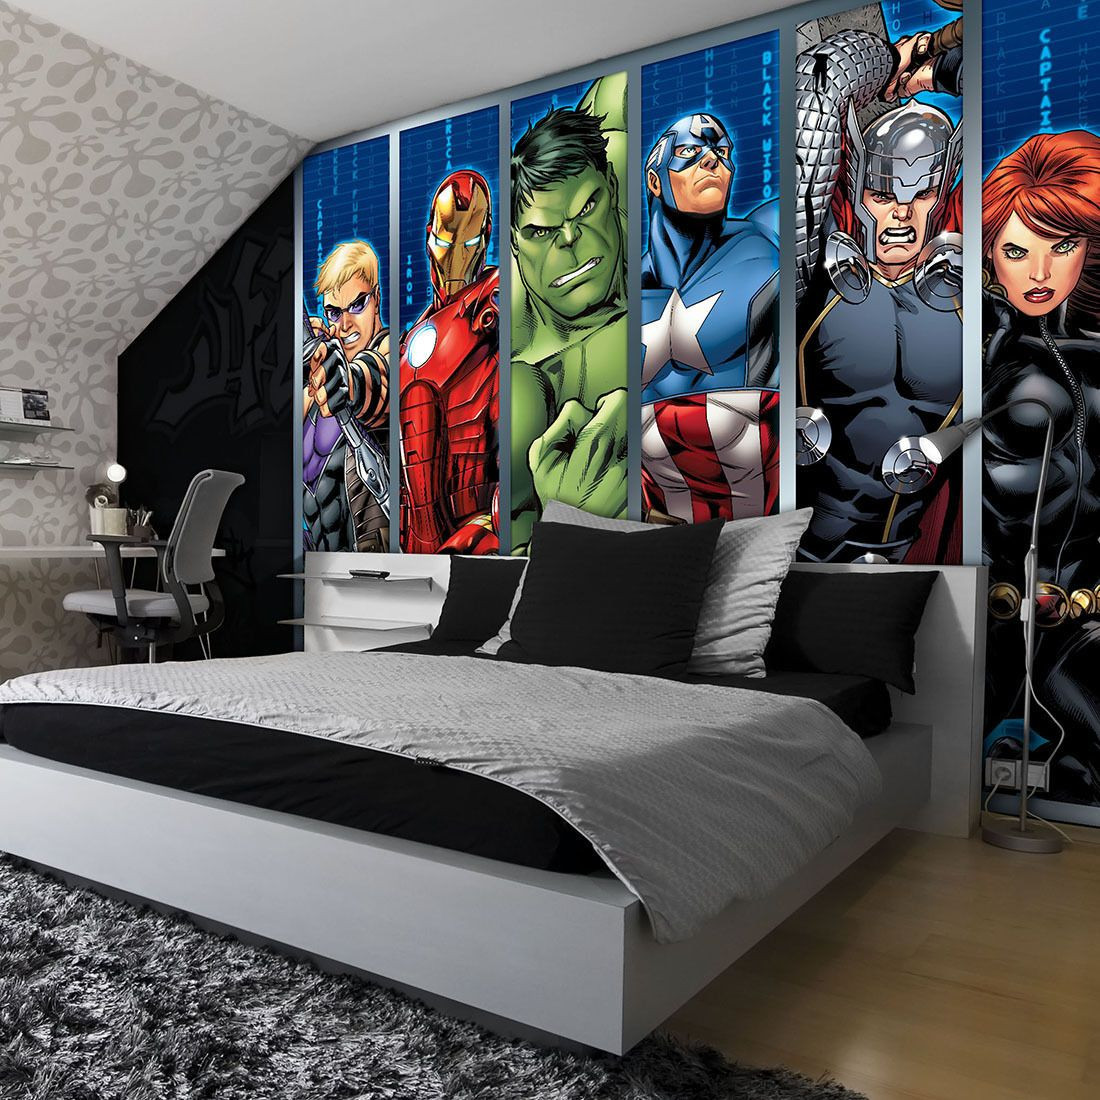 Avengers Bedroom Decor
 Disney Avengers Boys Bedroom PHOTO WALLPAPER WALL MURAL